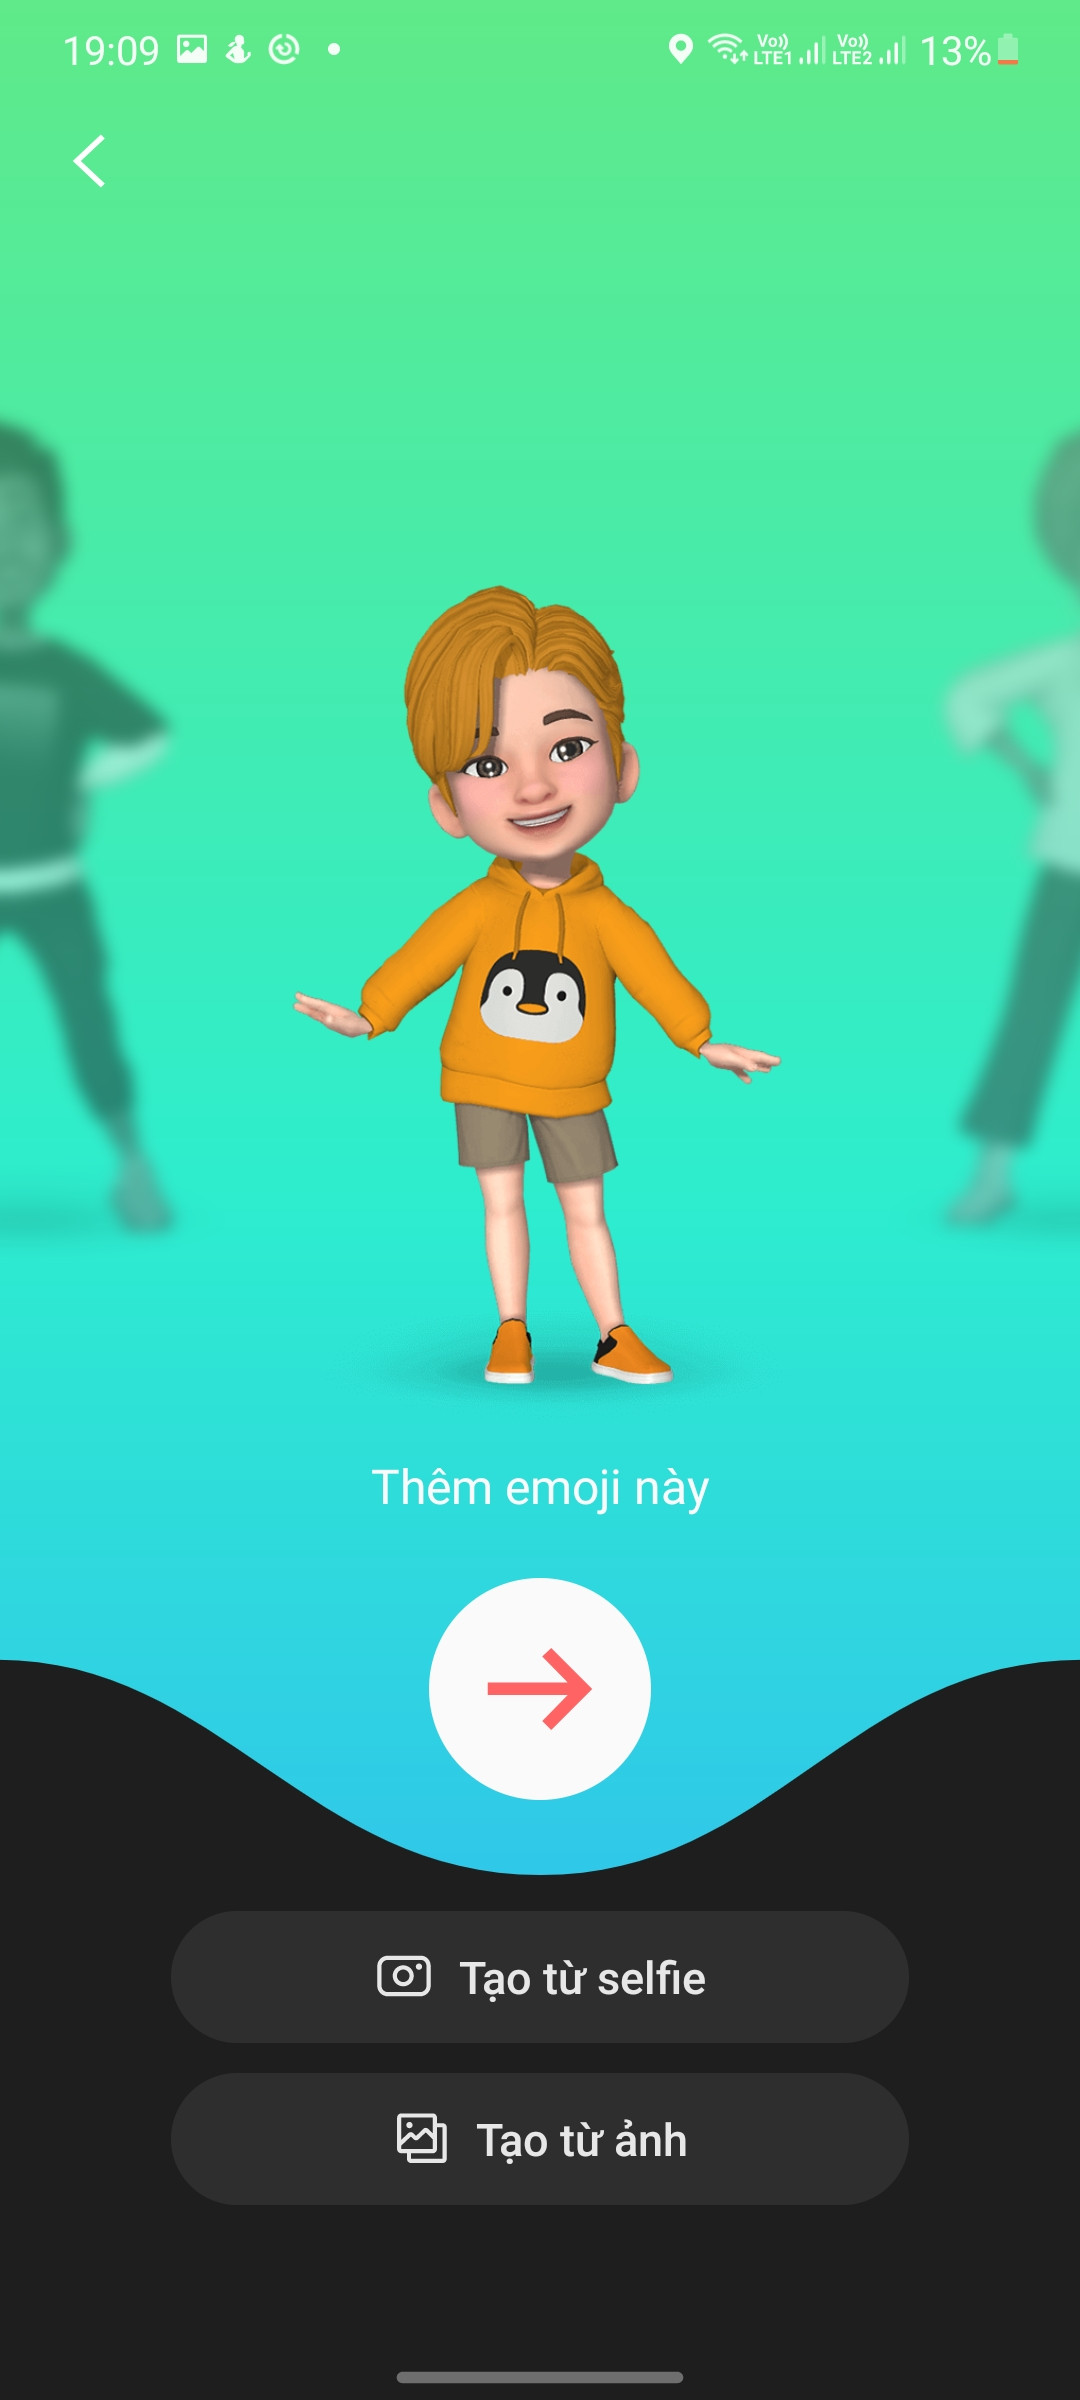 AR Emoji sẽ là sự lựa chọn tuyệt vời để biến những bức ảnh của bạn thành những hình vui nhộn và ngộ nghĩnh. Bạn có thể thay đổi biểu cảm khuôn mặt, thêm các phụ kiện thời trang và tạo ra hình ảnh độc đáo chỉ với một vài thao tác đơn giản.